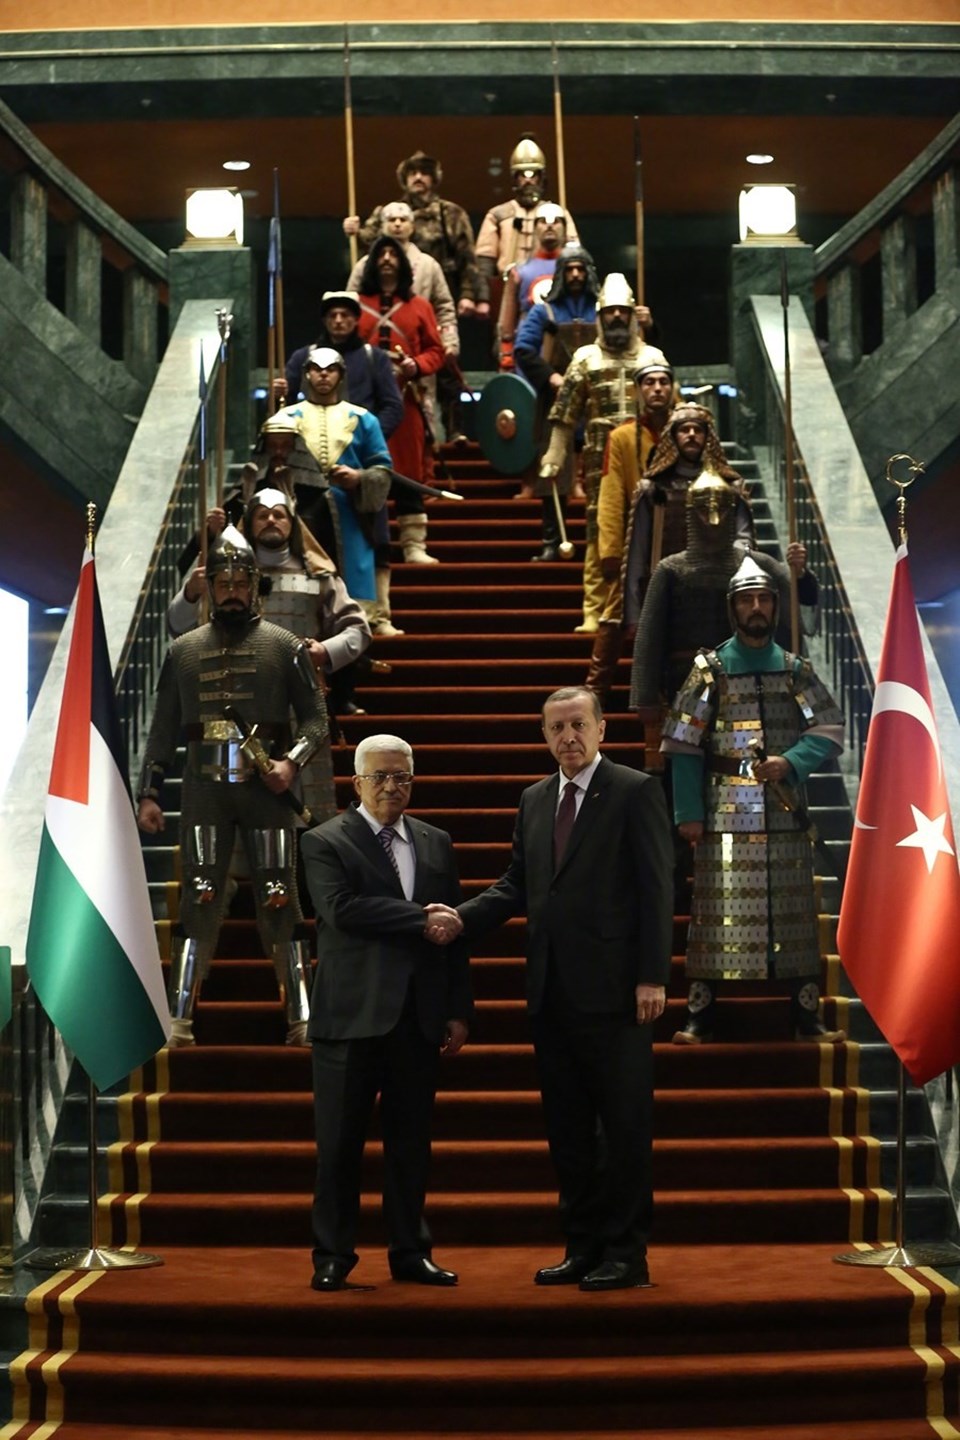 İşte tarihteki 16 Türk devleti, Cumhurbaşkanlığı Sarayı'ndaki törende hepsi temsil edildi - 2